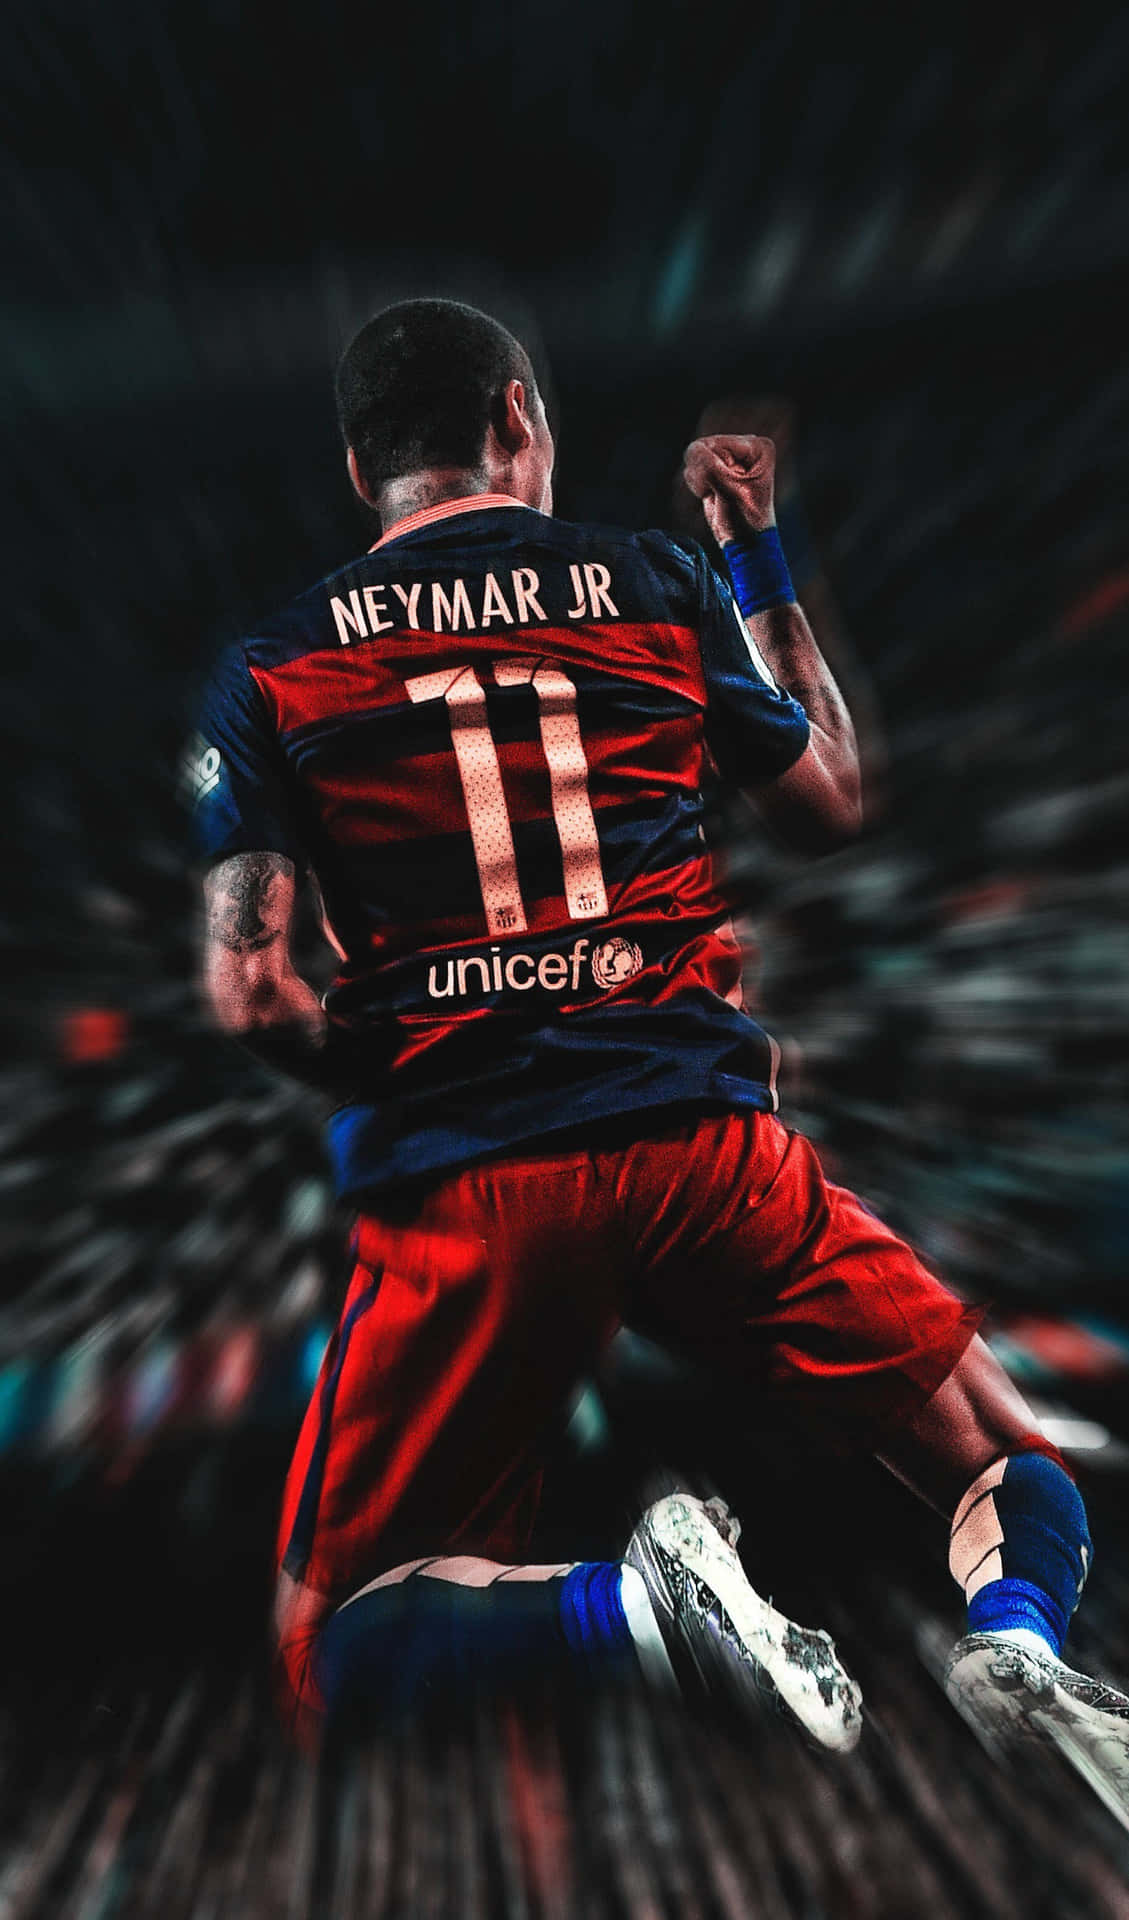 Neymar,brasilianische Ikone Und Fußballstar